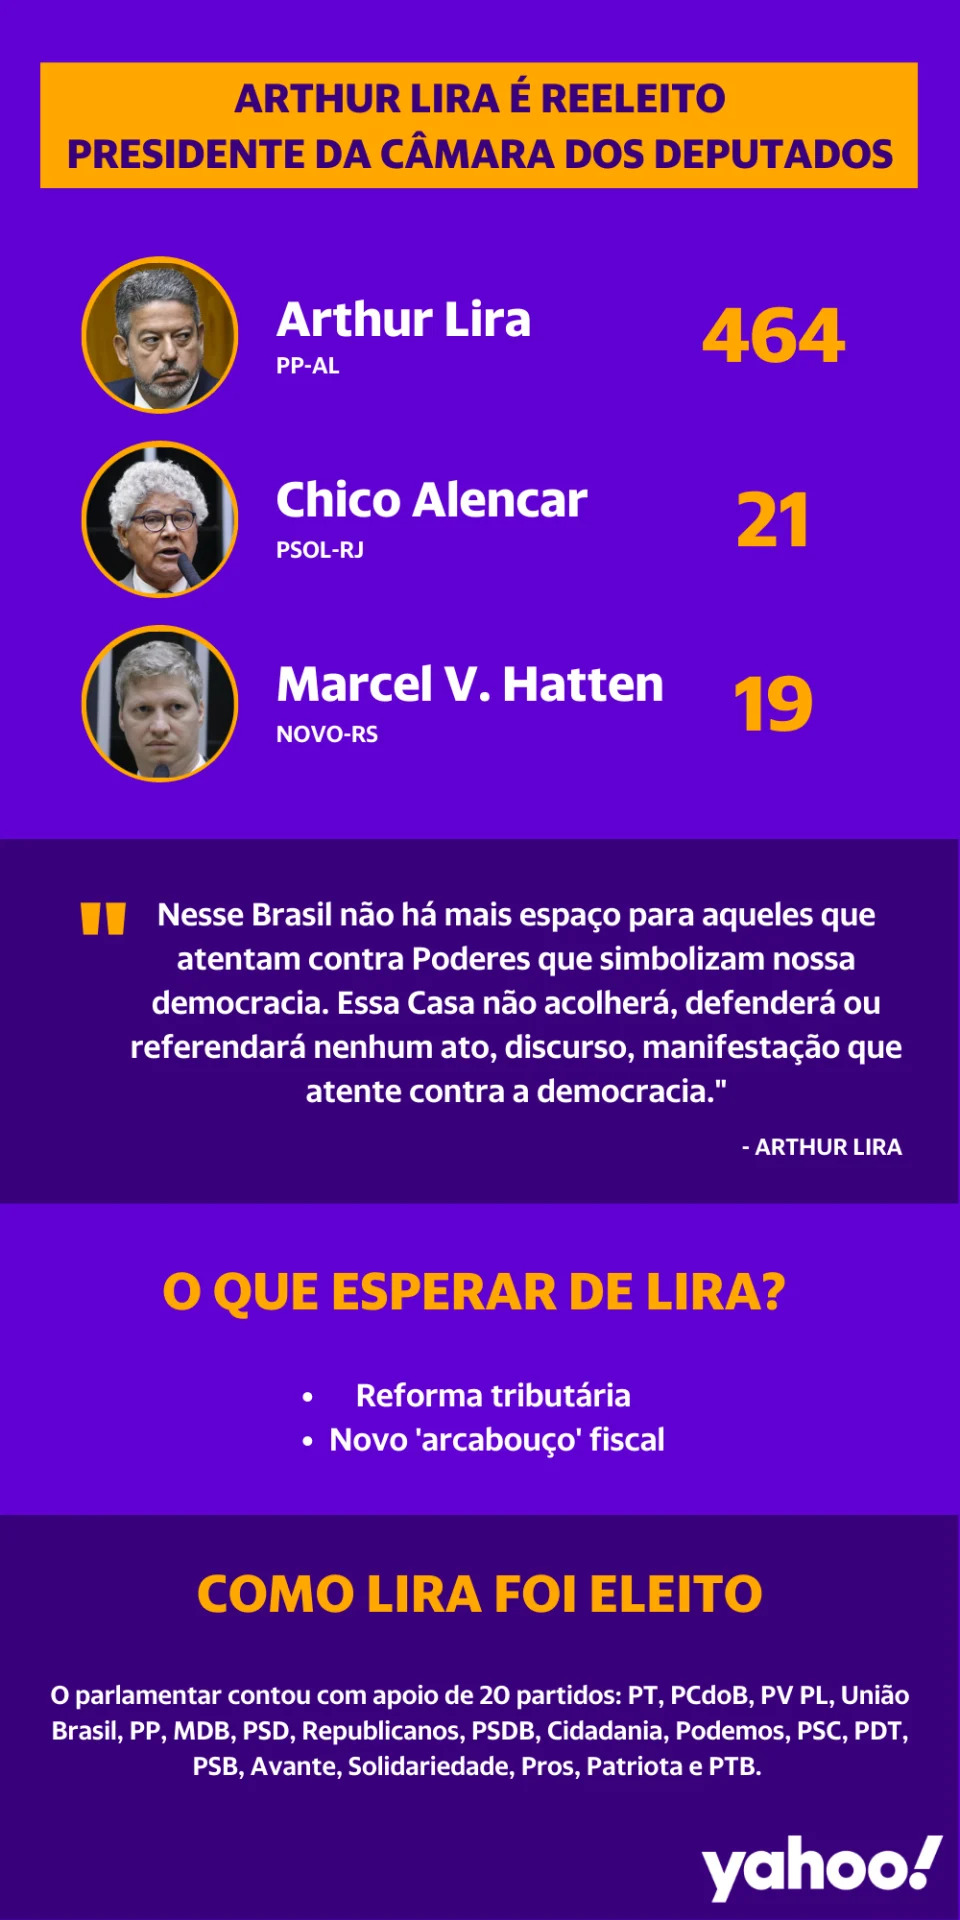 Arthur Lira é reeleito presidente da Câmara dos Deputados (Infografia: Matheus R. Ribeiro/Yahoo Notícias)